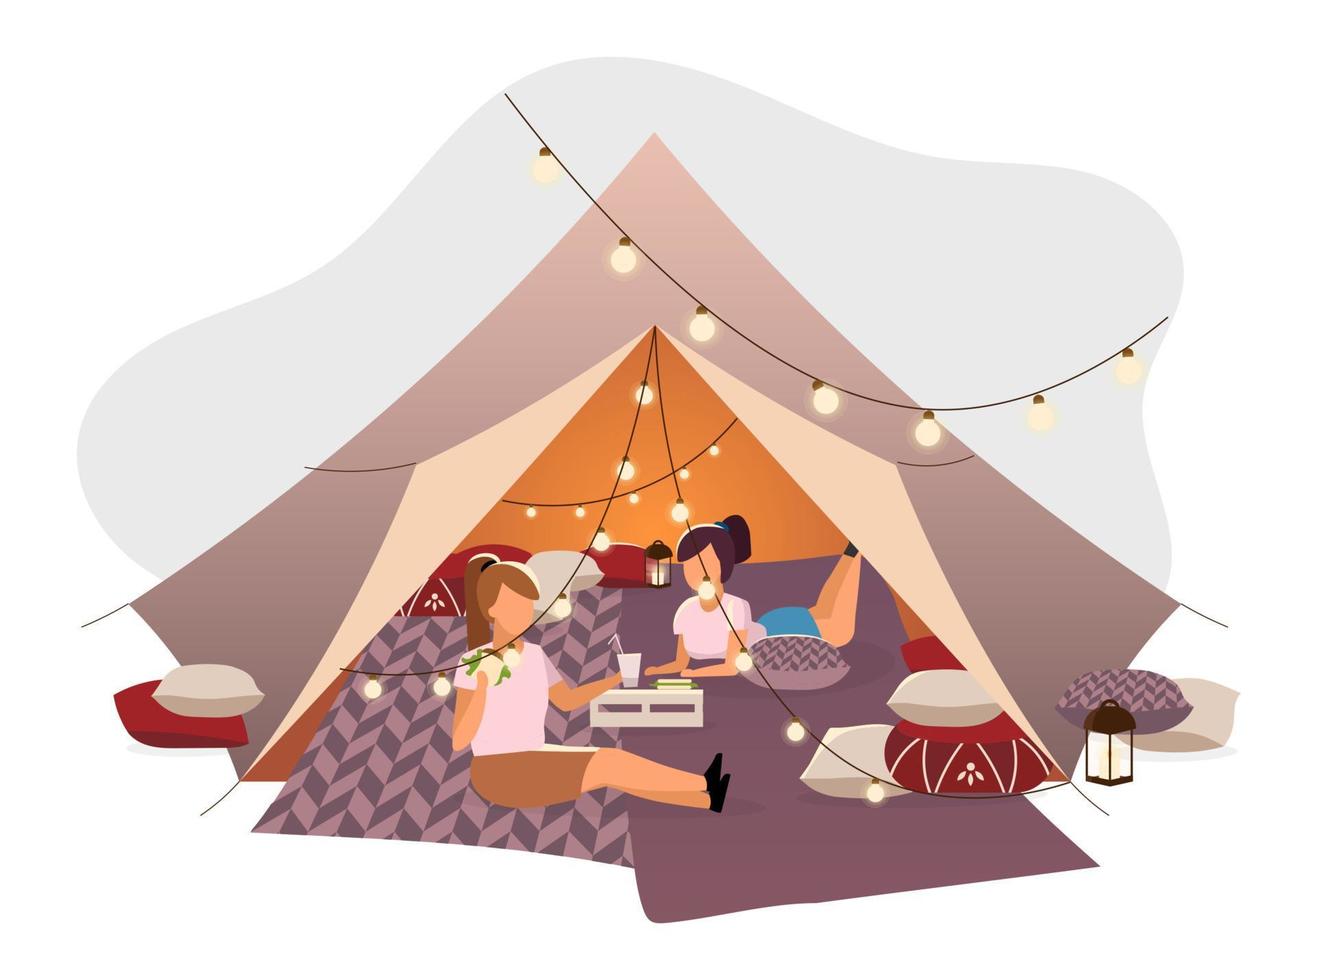 filles se reposant dans l'illustration vectorielle plane de la tente. amies, touristes allongés sur des couvertures dans un tipi décoré de guirlandes d'ampoules. jeunes campeurs s'amusant dans un camp d'été en buvant des cocktails vecteur